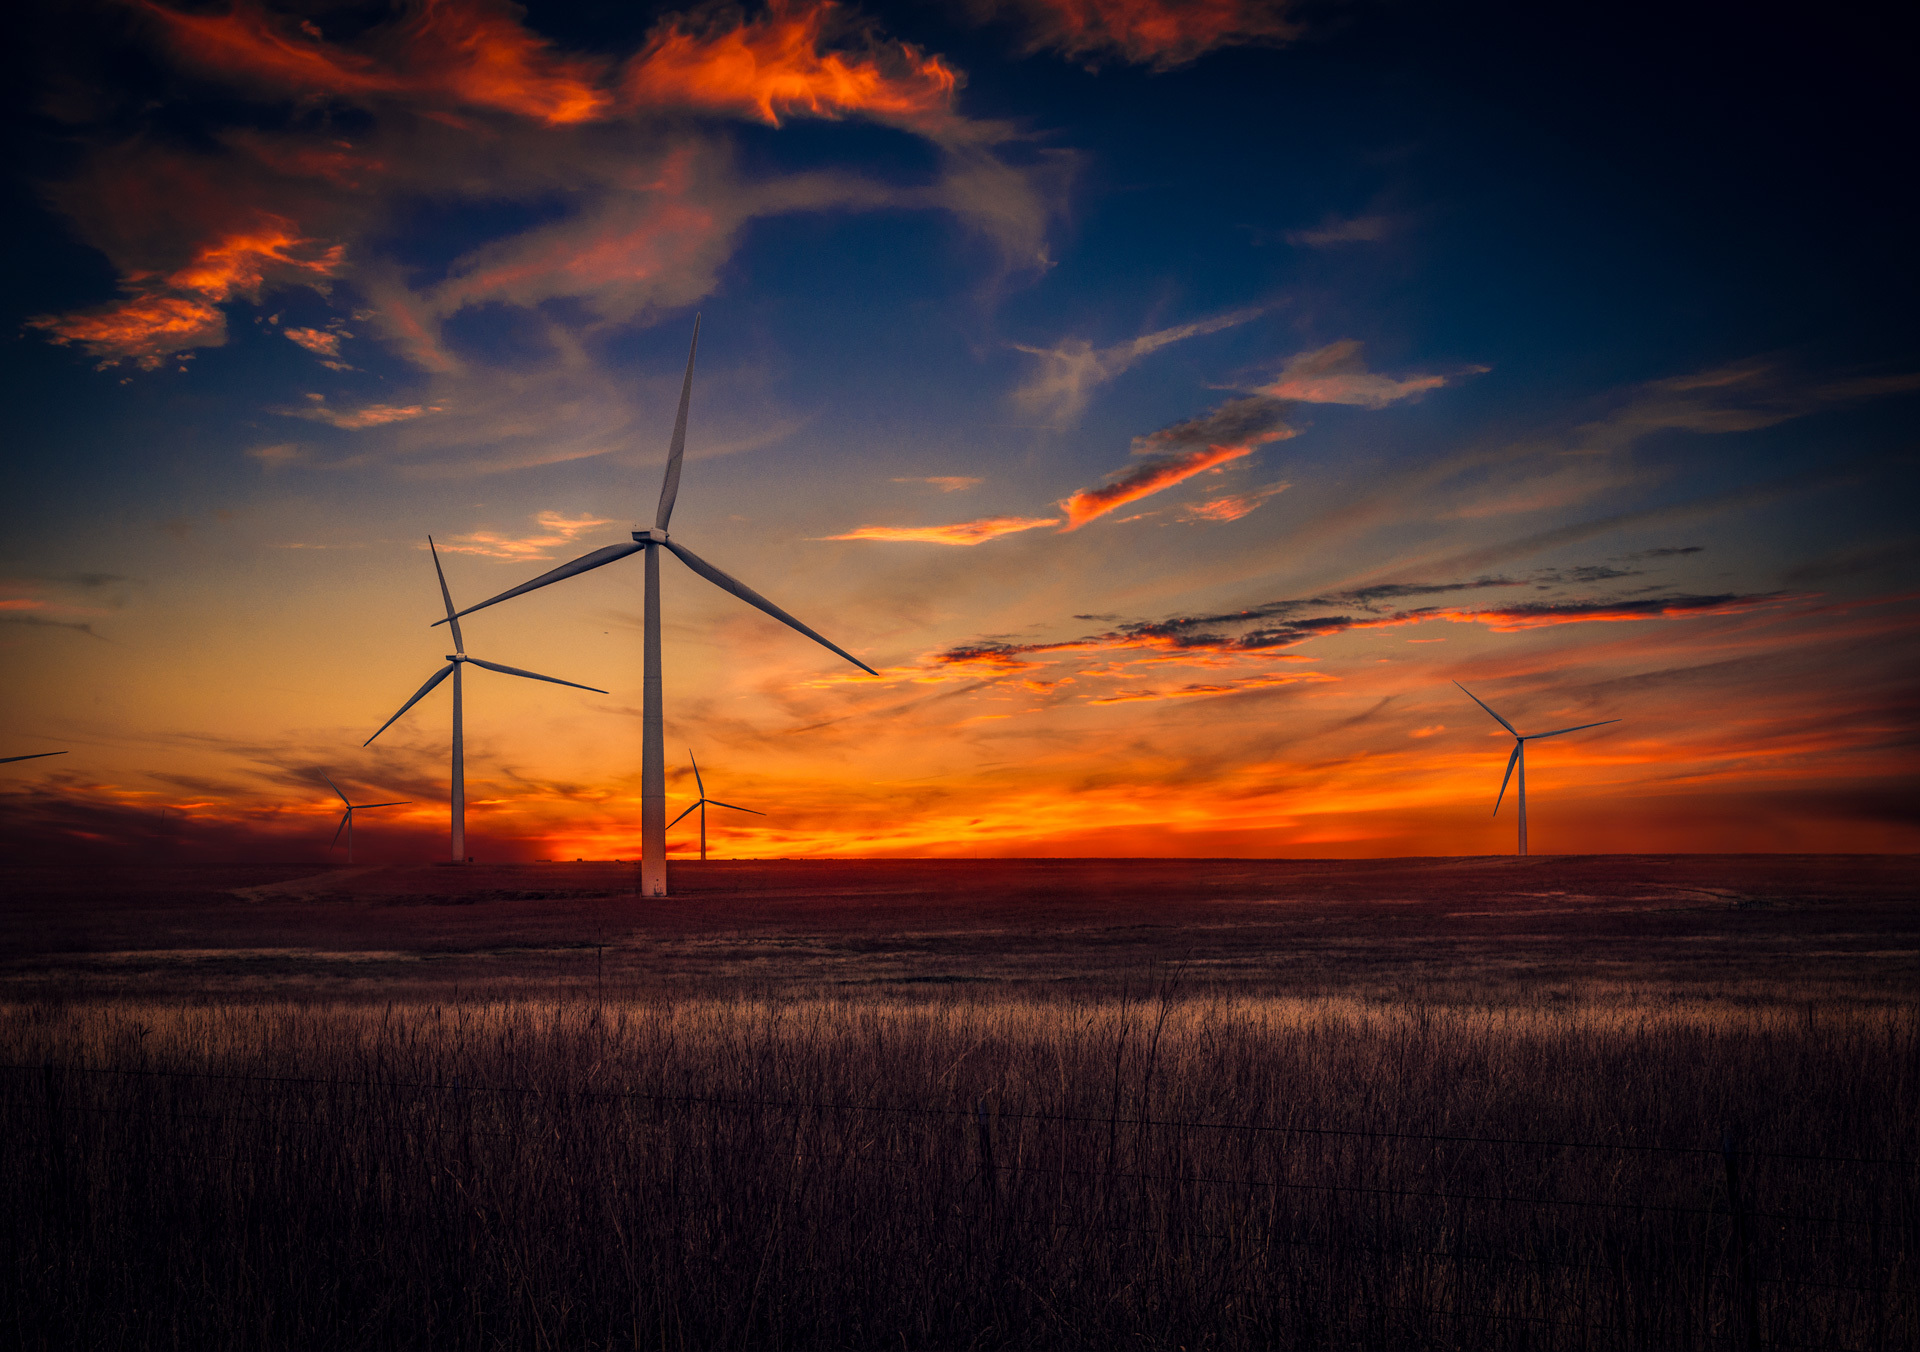 papel tapiz de viento,cielo,turbina eólica,molino,granja eólica,puesta de sol